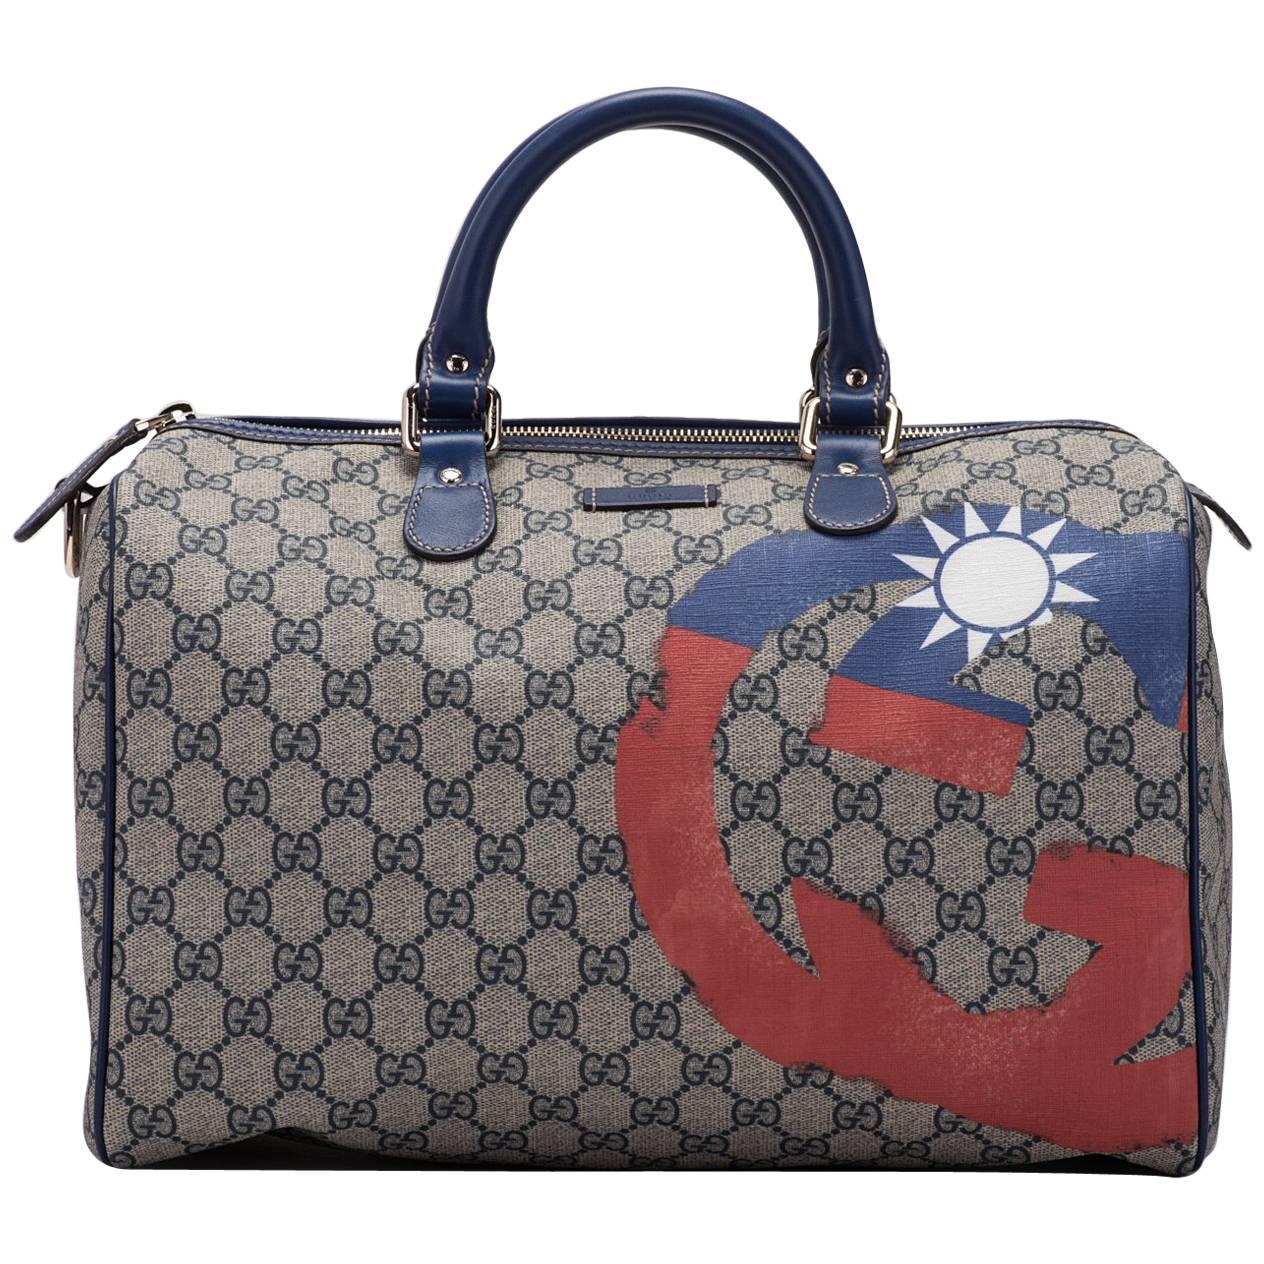 Gucci Limited Edition Guccissima Blue Boston Bag